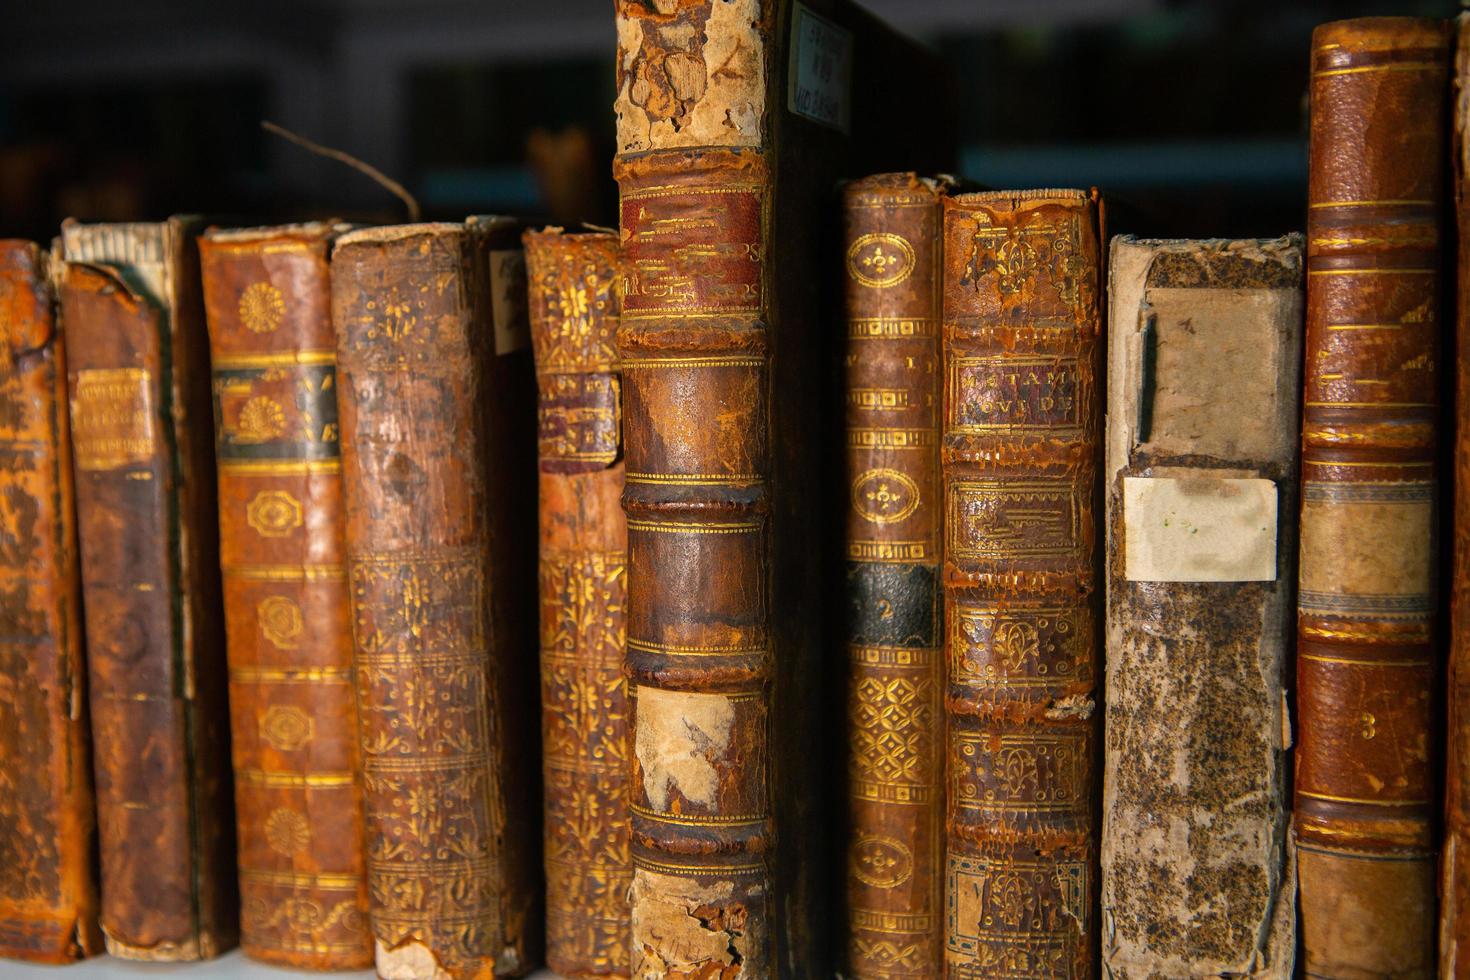 livros muito antigos nas prateleiras da biblioteca. livros como um símbolo de conhecimento. foto